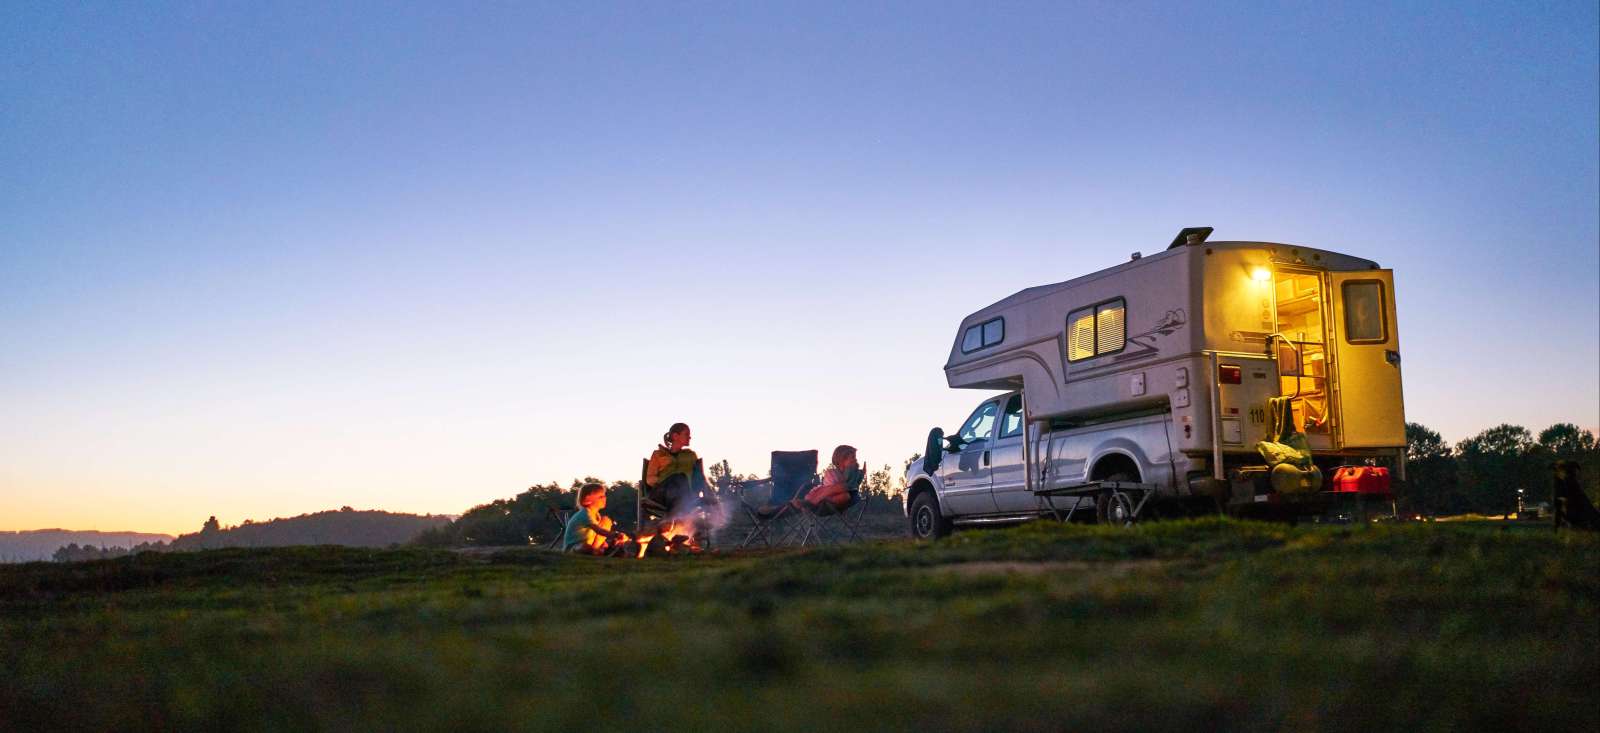 Voyage en véhicule : Ma famille en camping car chez les kiwis